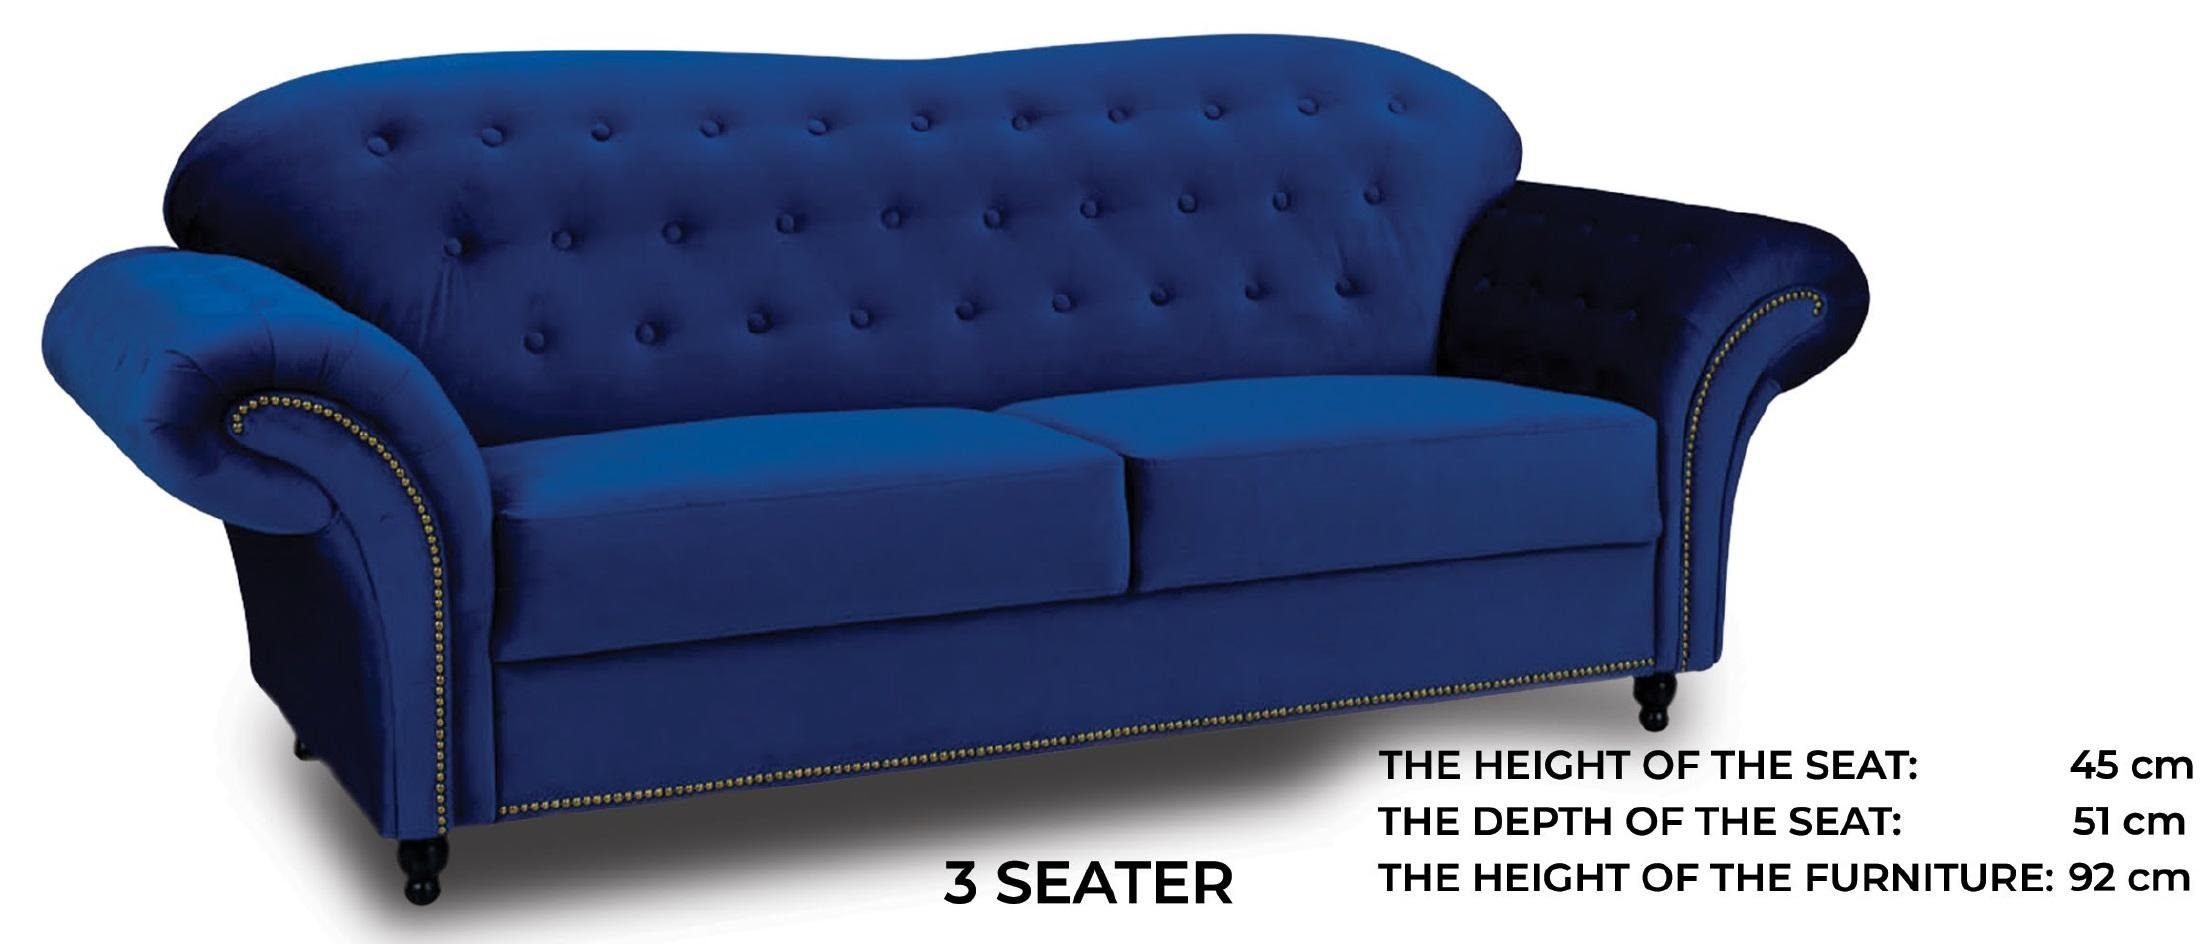 JVmoebel Sofa Blauer luxus Chesterfield Dreisitzer mit Nieten Polster Neu, Made in Europe